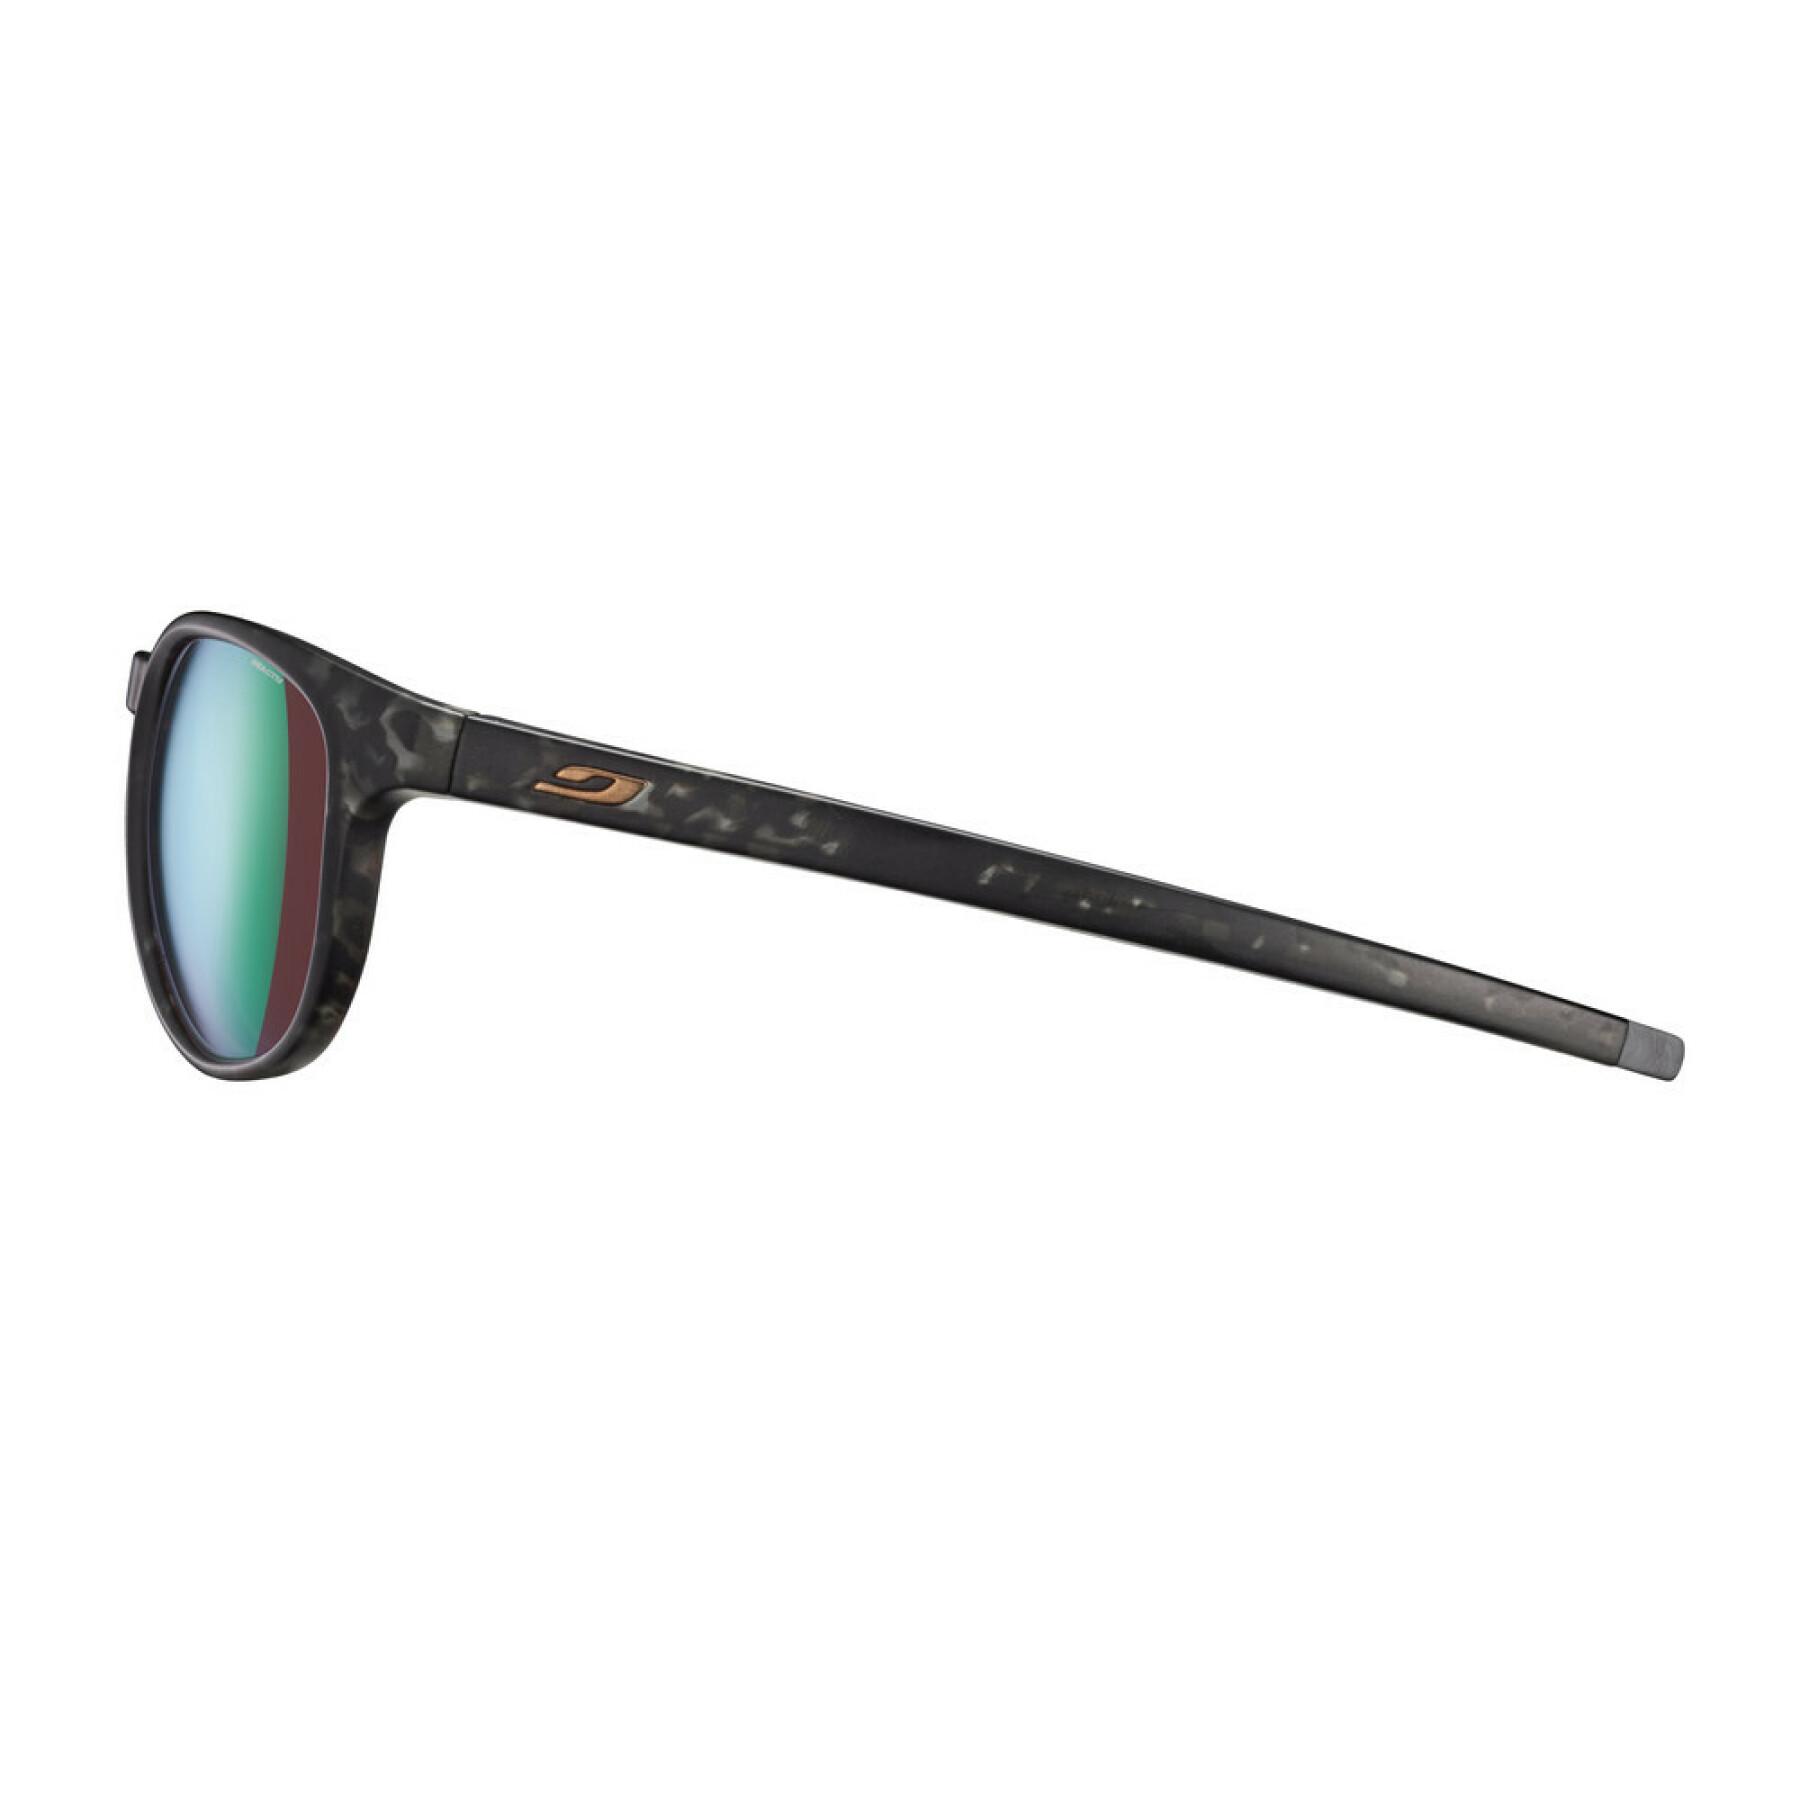 Sunglasses Julbo Elevate Reactiv 2-3 Glare Control